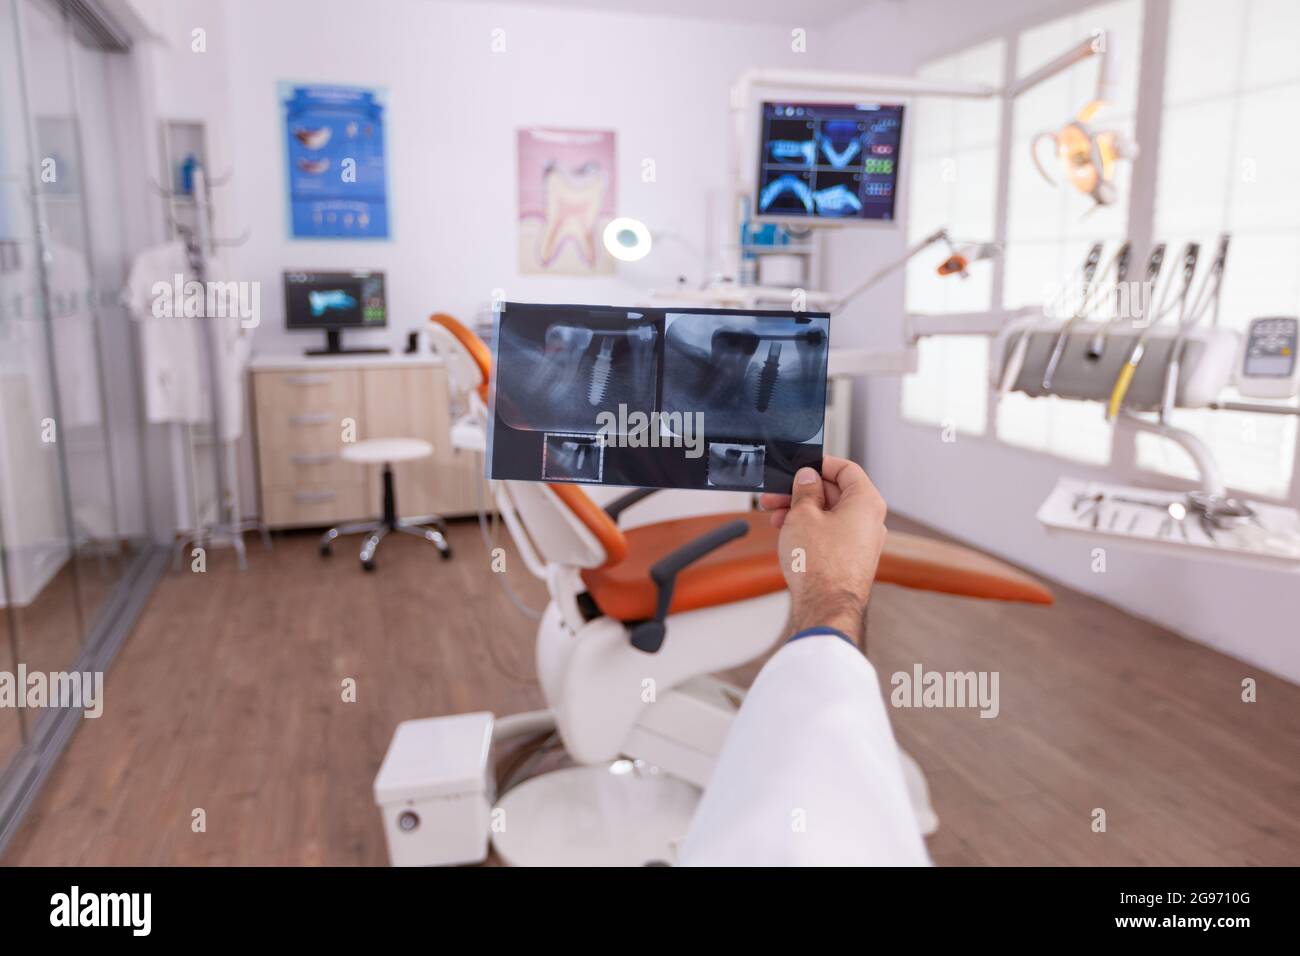 Radiologe Zahnarzt Arzt hält medizinische Zähne Radiographie arbeiten in Stomatologie Krankenhaus Büro Untersuchungsraum. Fachkieferorthopäde bei der Analyse des Zahnkiefers nach oraler Zahnoperation Stockfoto